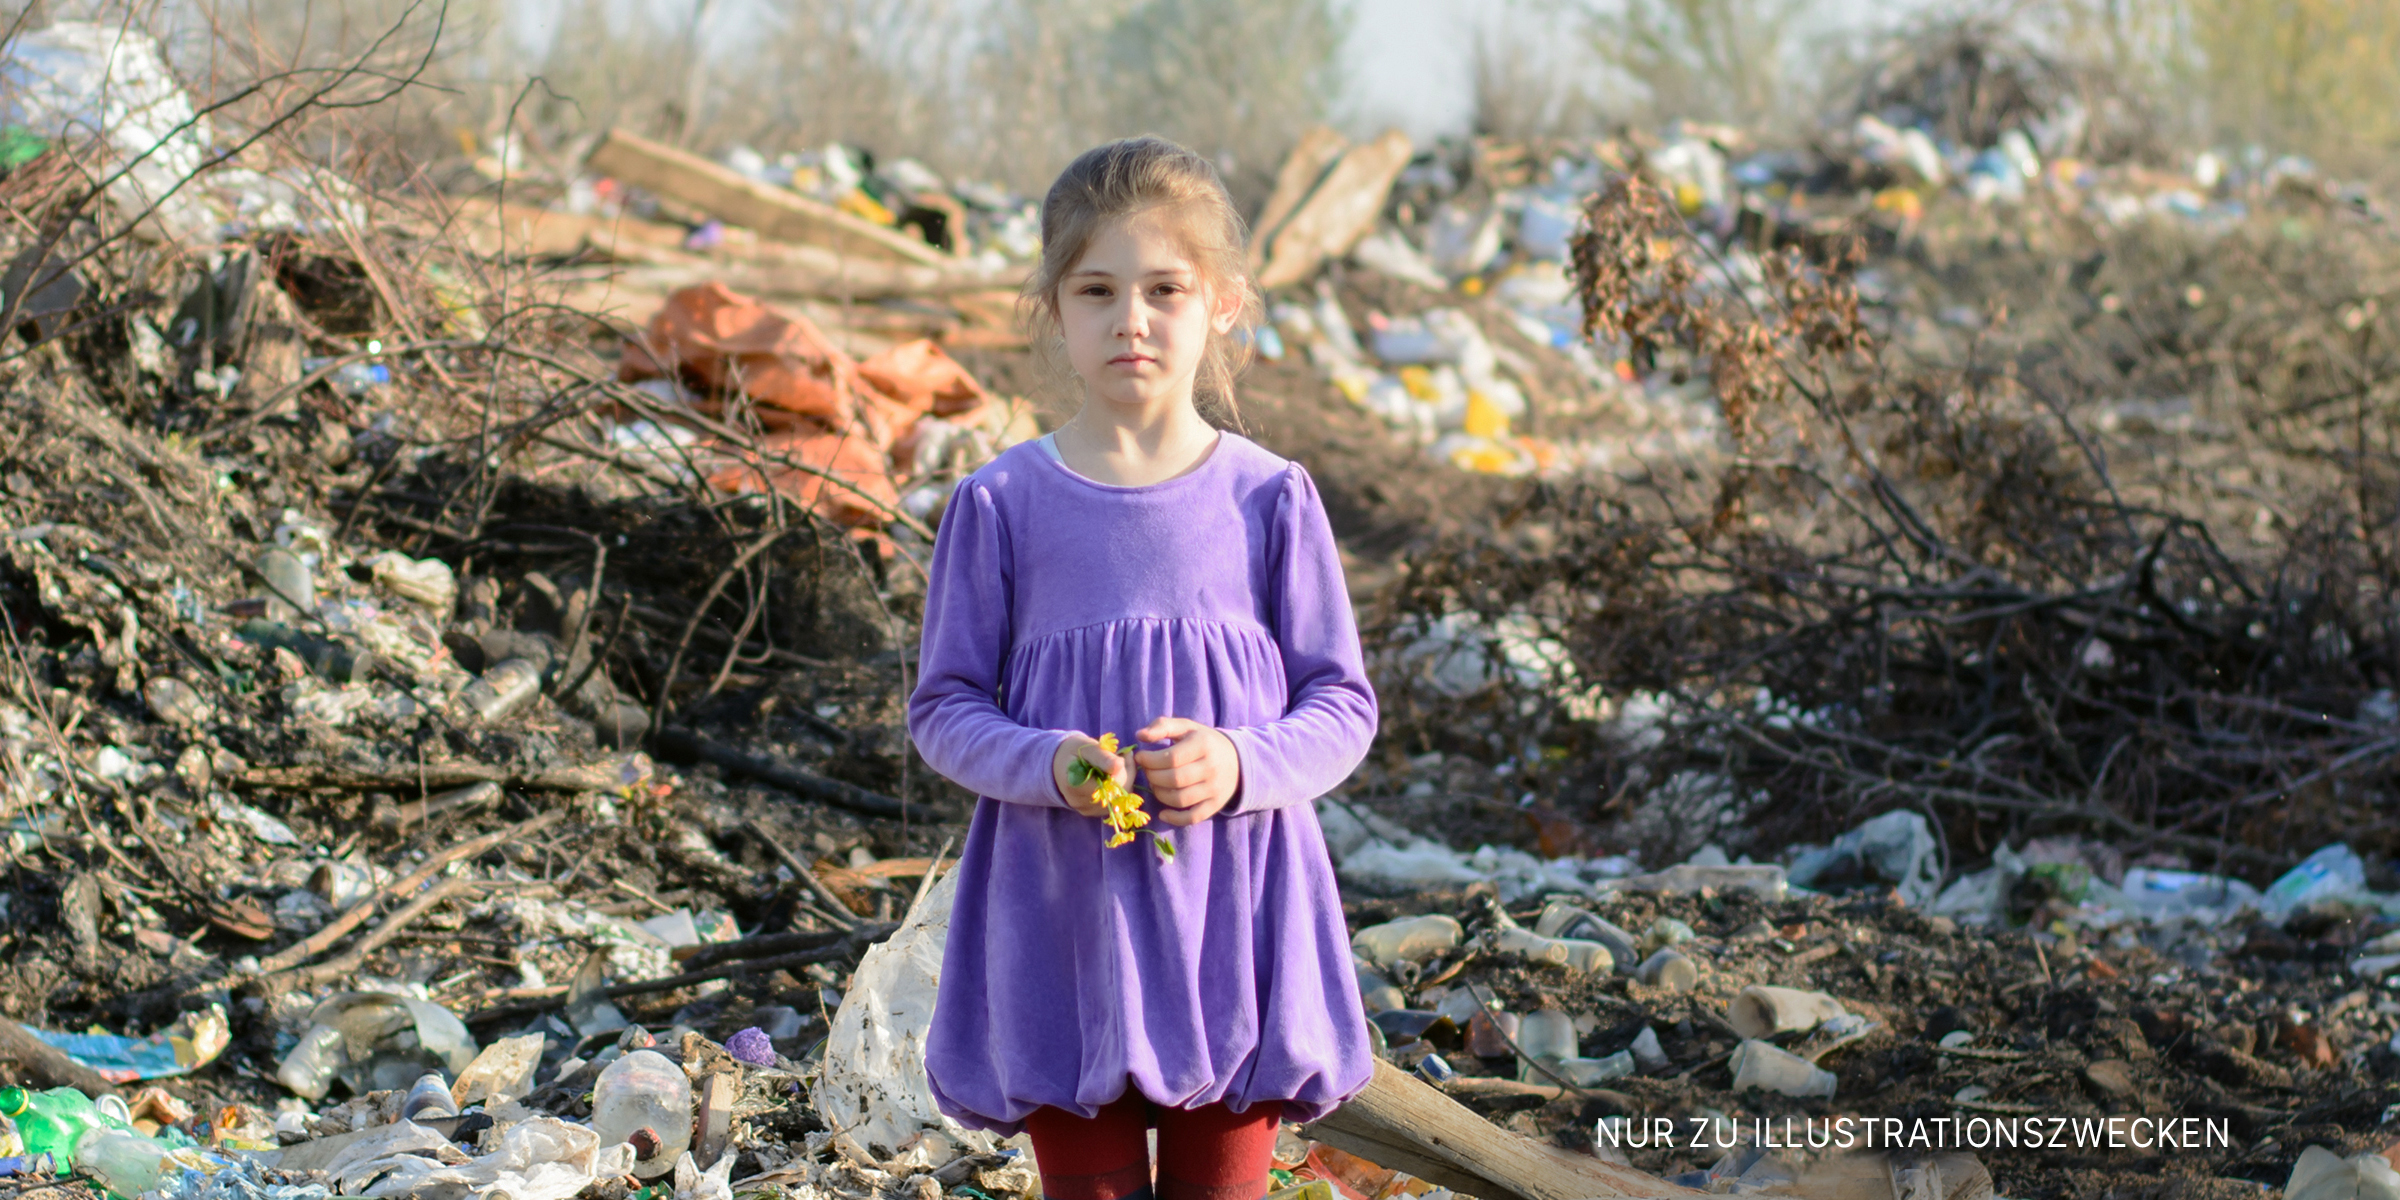 Einsames kleines Mädchen in einem violetten Kleid auf einer Mülldeponie | Quelle: Shutterstock